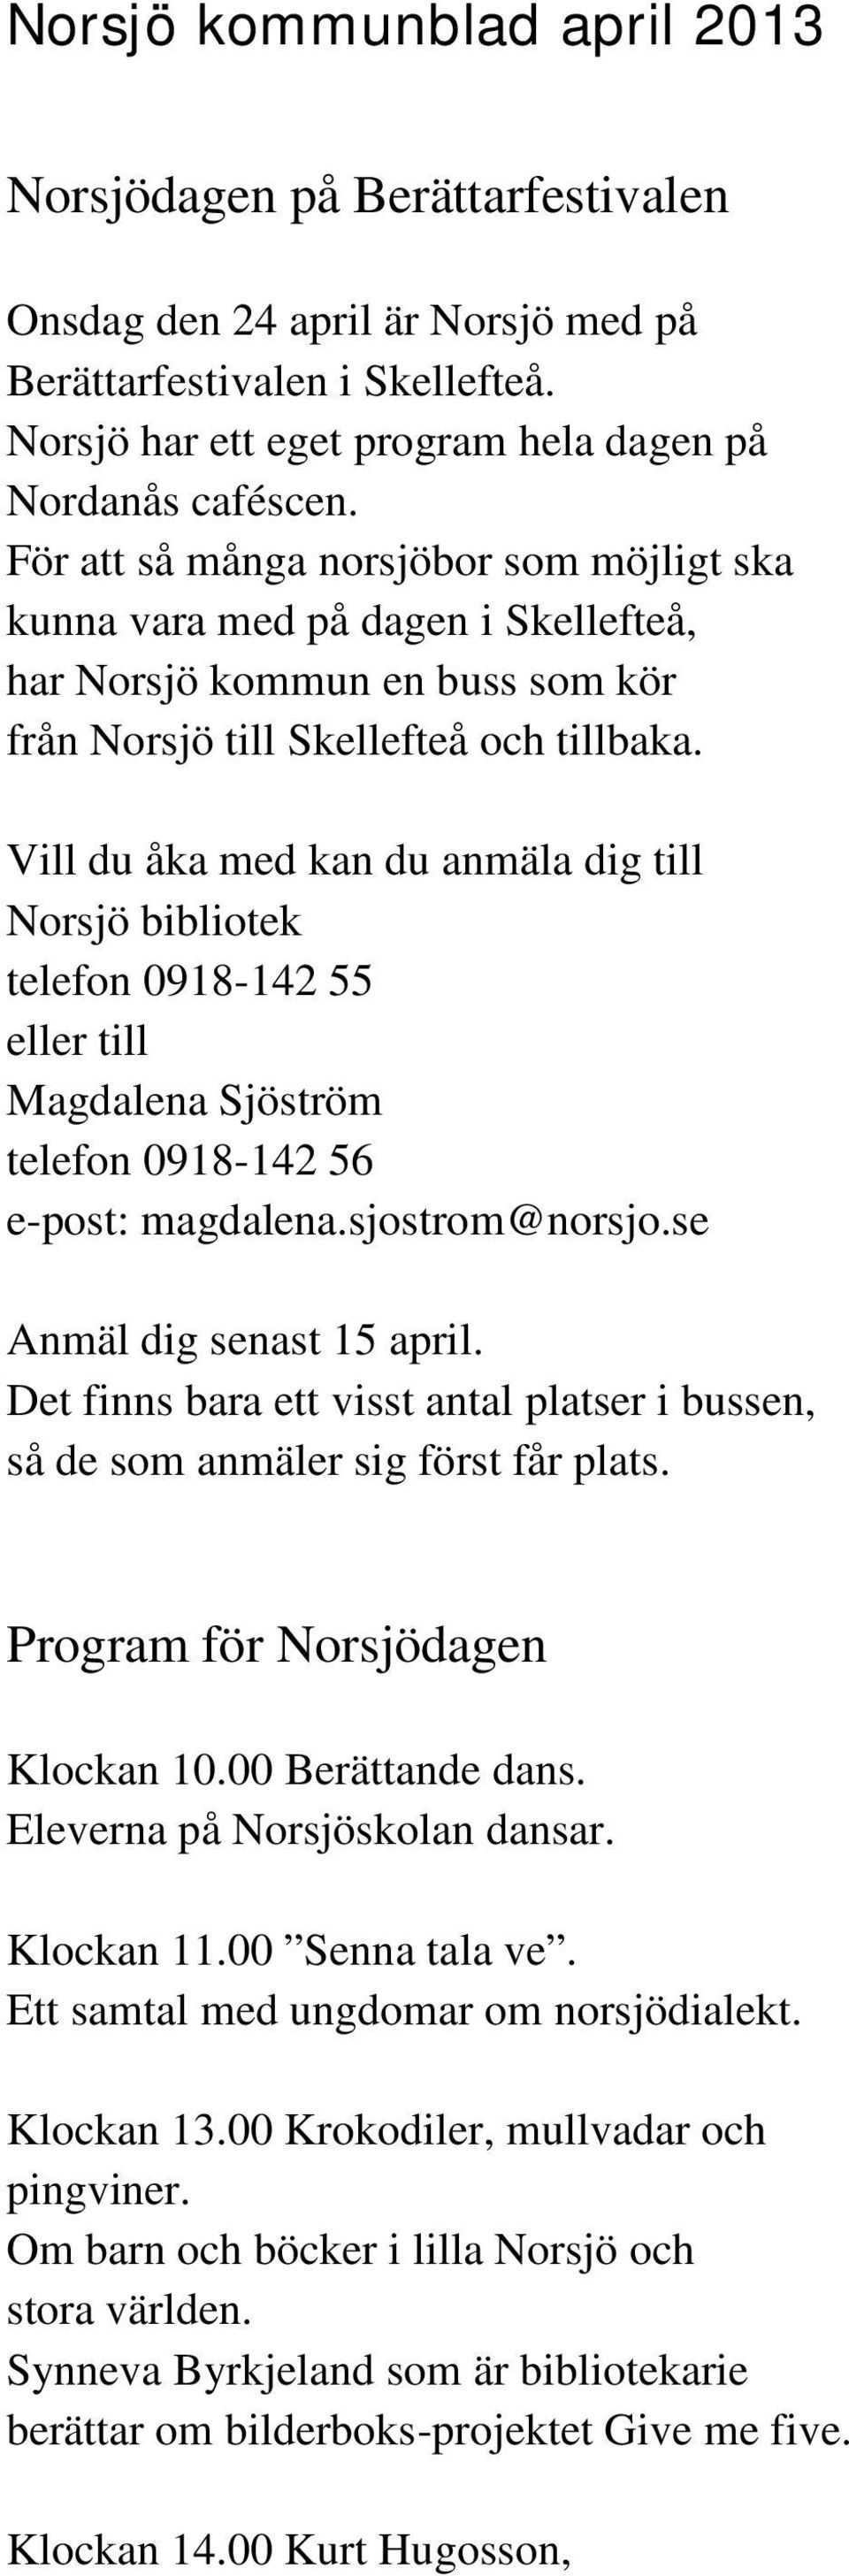 Vill du åka med kan du anmäla dig till Norsjö bibliotek telefon 0918-142 55 eller till Magdalena Sjöström telefon 0918-142 56 e-post: magdalena.sjostrom@norsjo.se Anmäl dig senast 15 april.